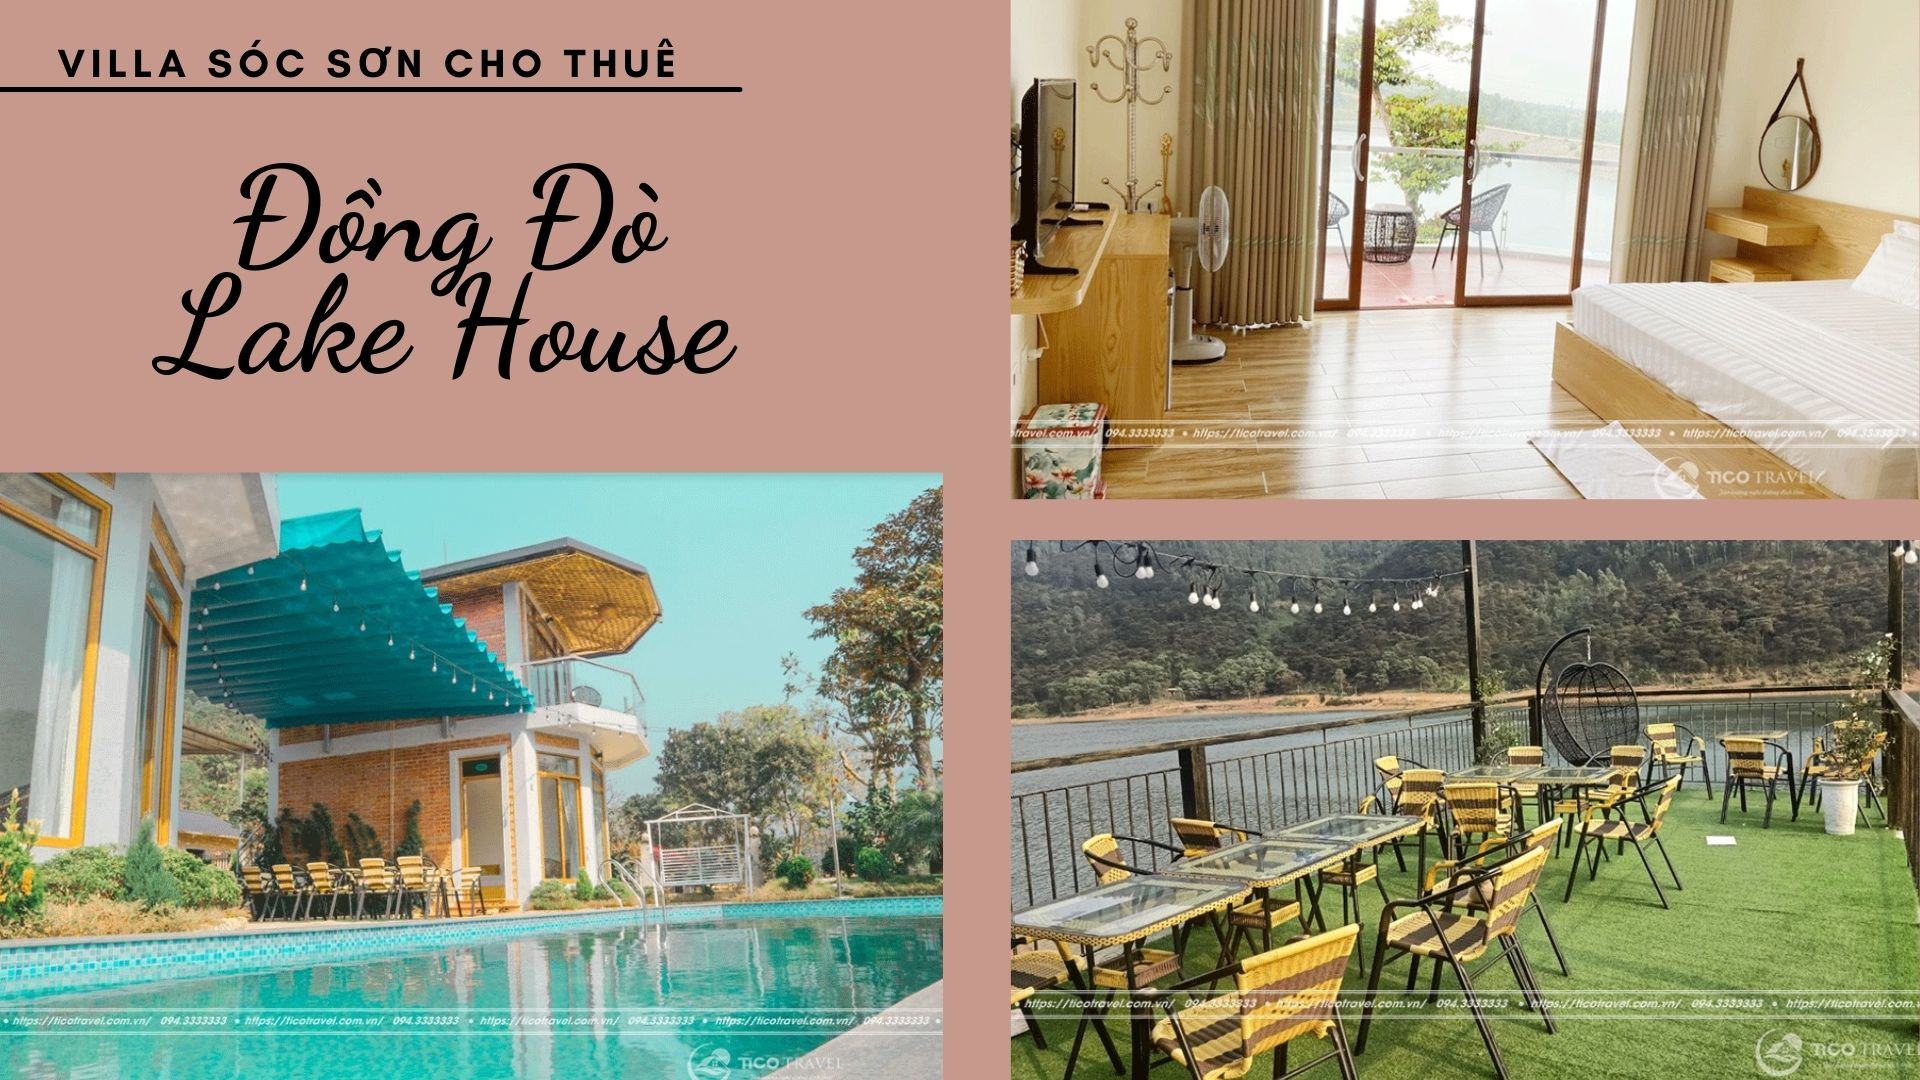 Đồng Đò Lake House - Villa Sóc Sơn giá rẻ view trực diện hồ Đồng Đò